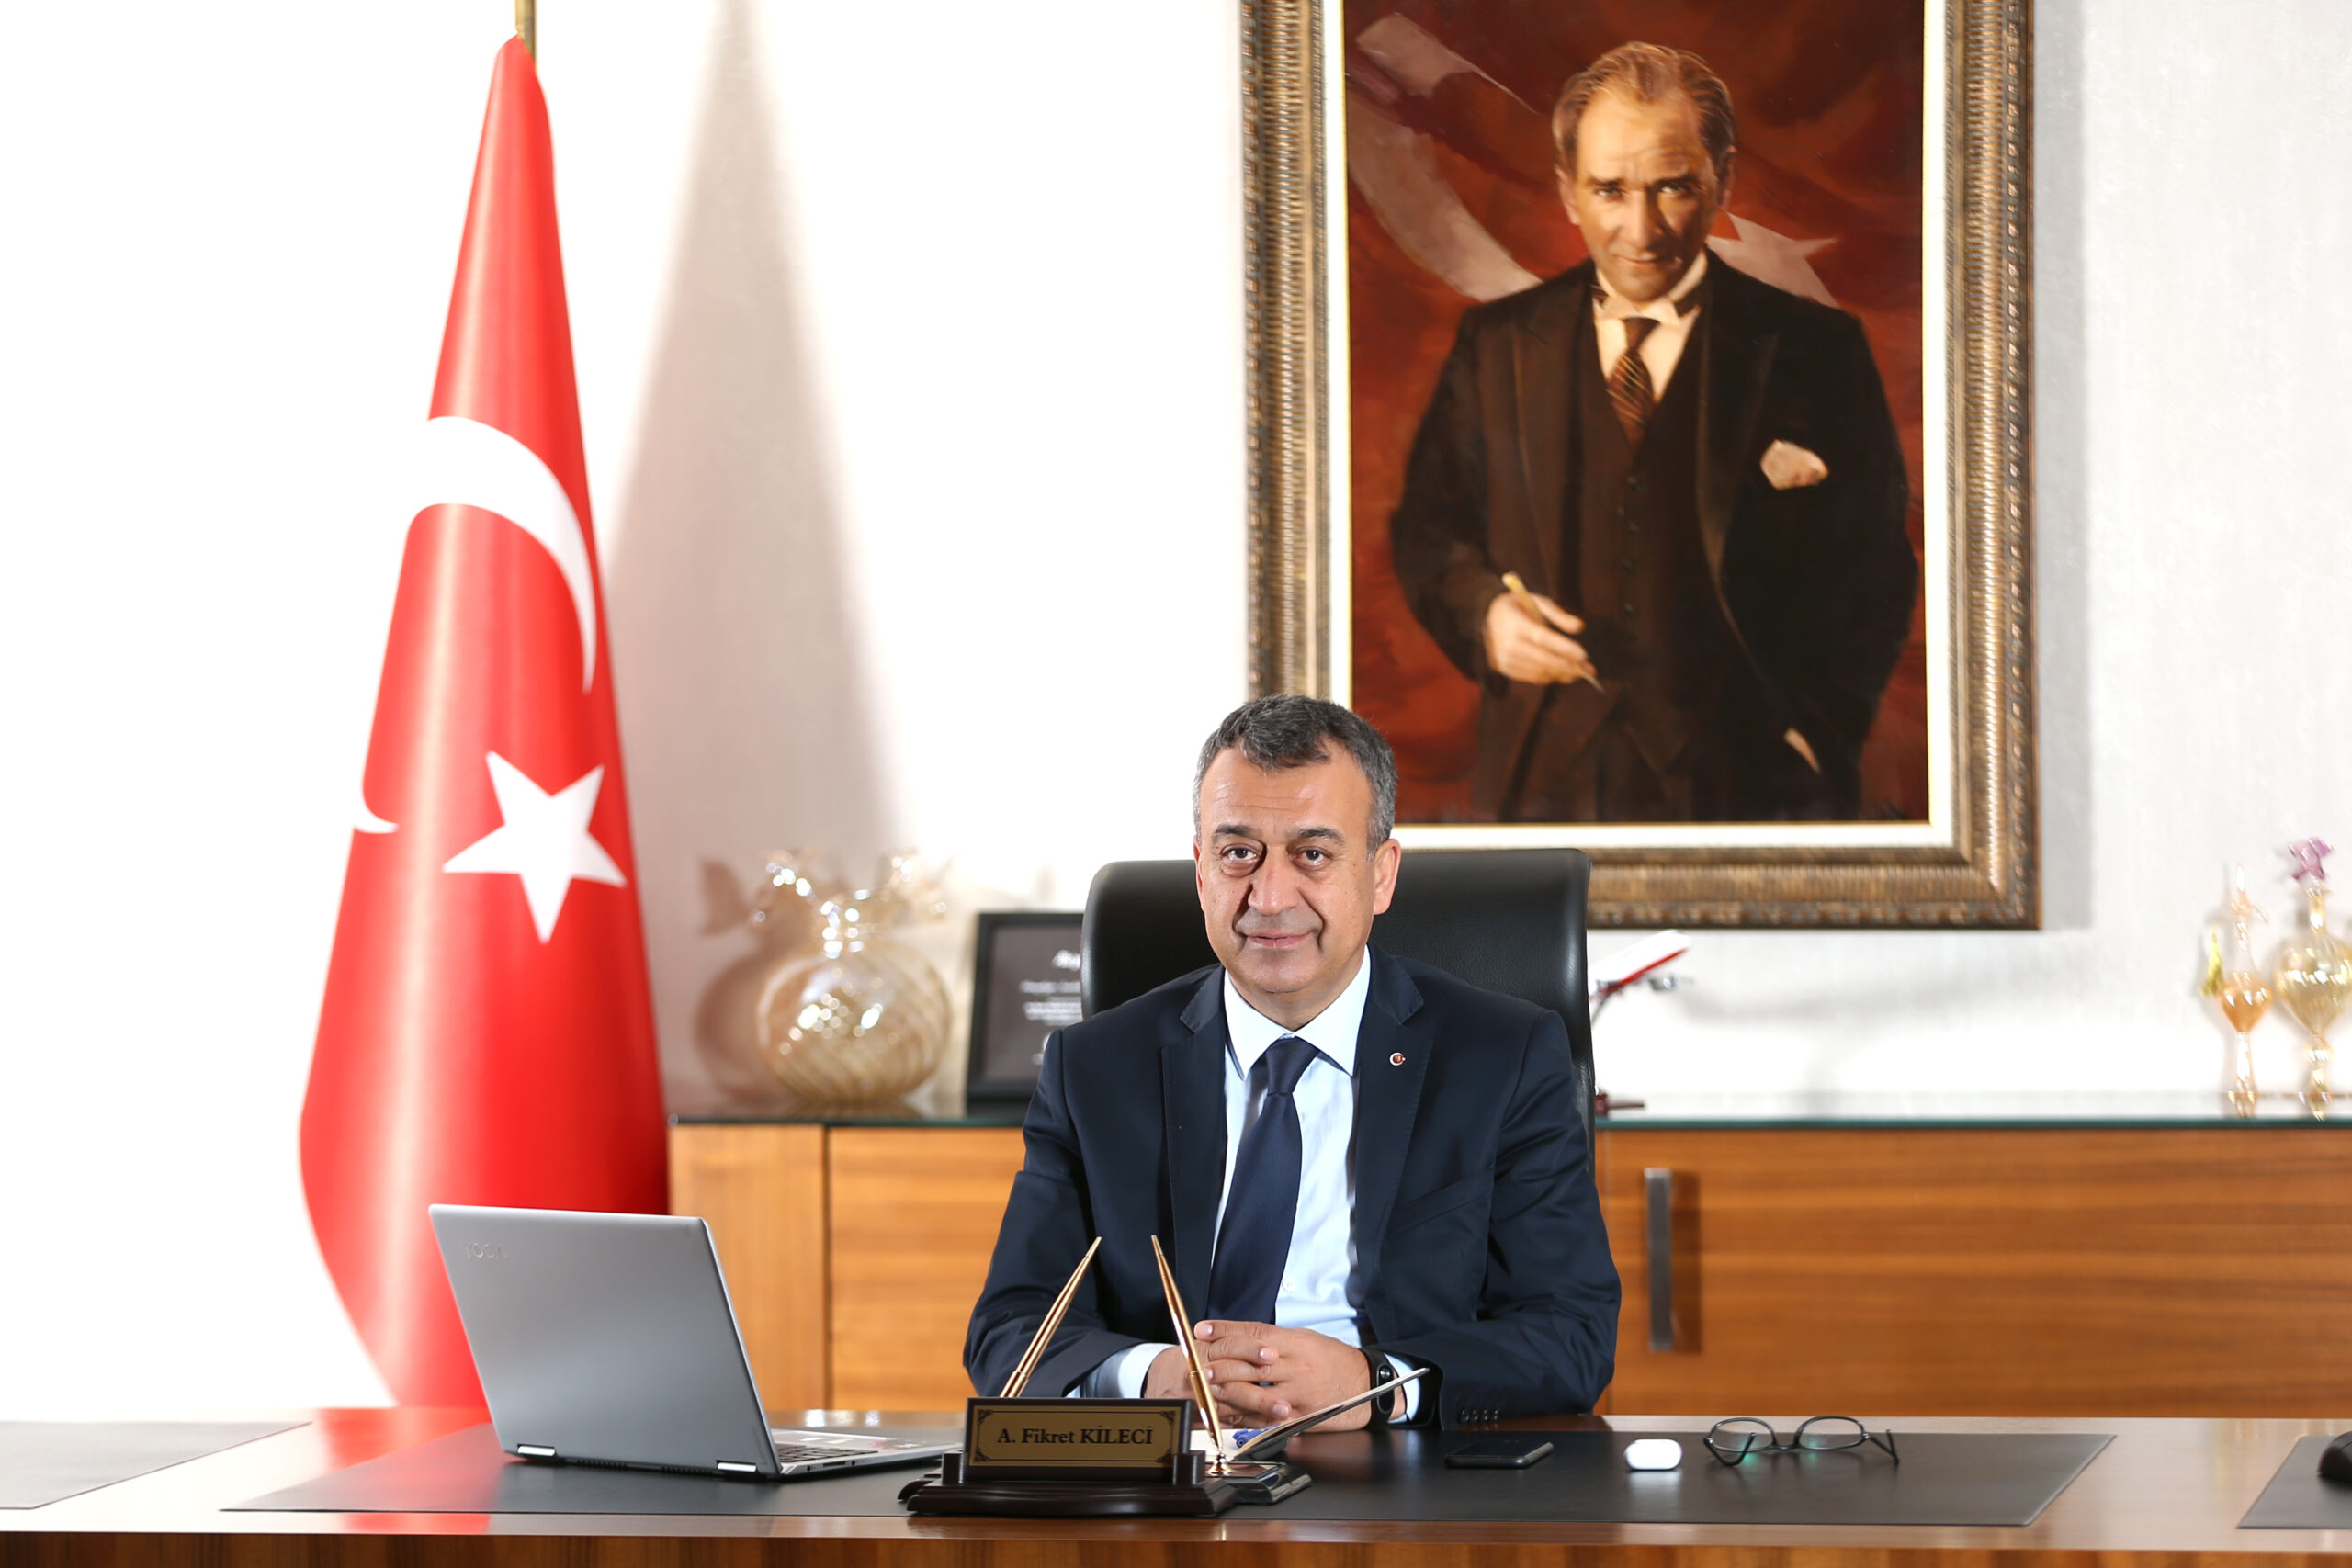 GAİB Koordinatör Başkanı Ahmet Fikret Kileci: “”Atatürk’ü Anmadığımız Günümüz Yok”